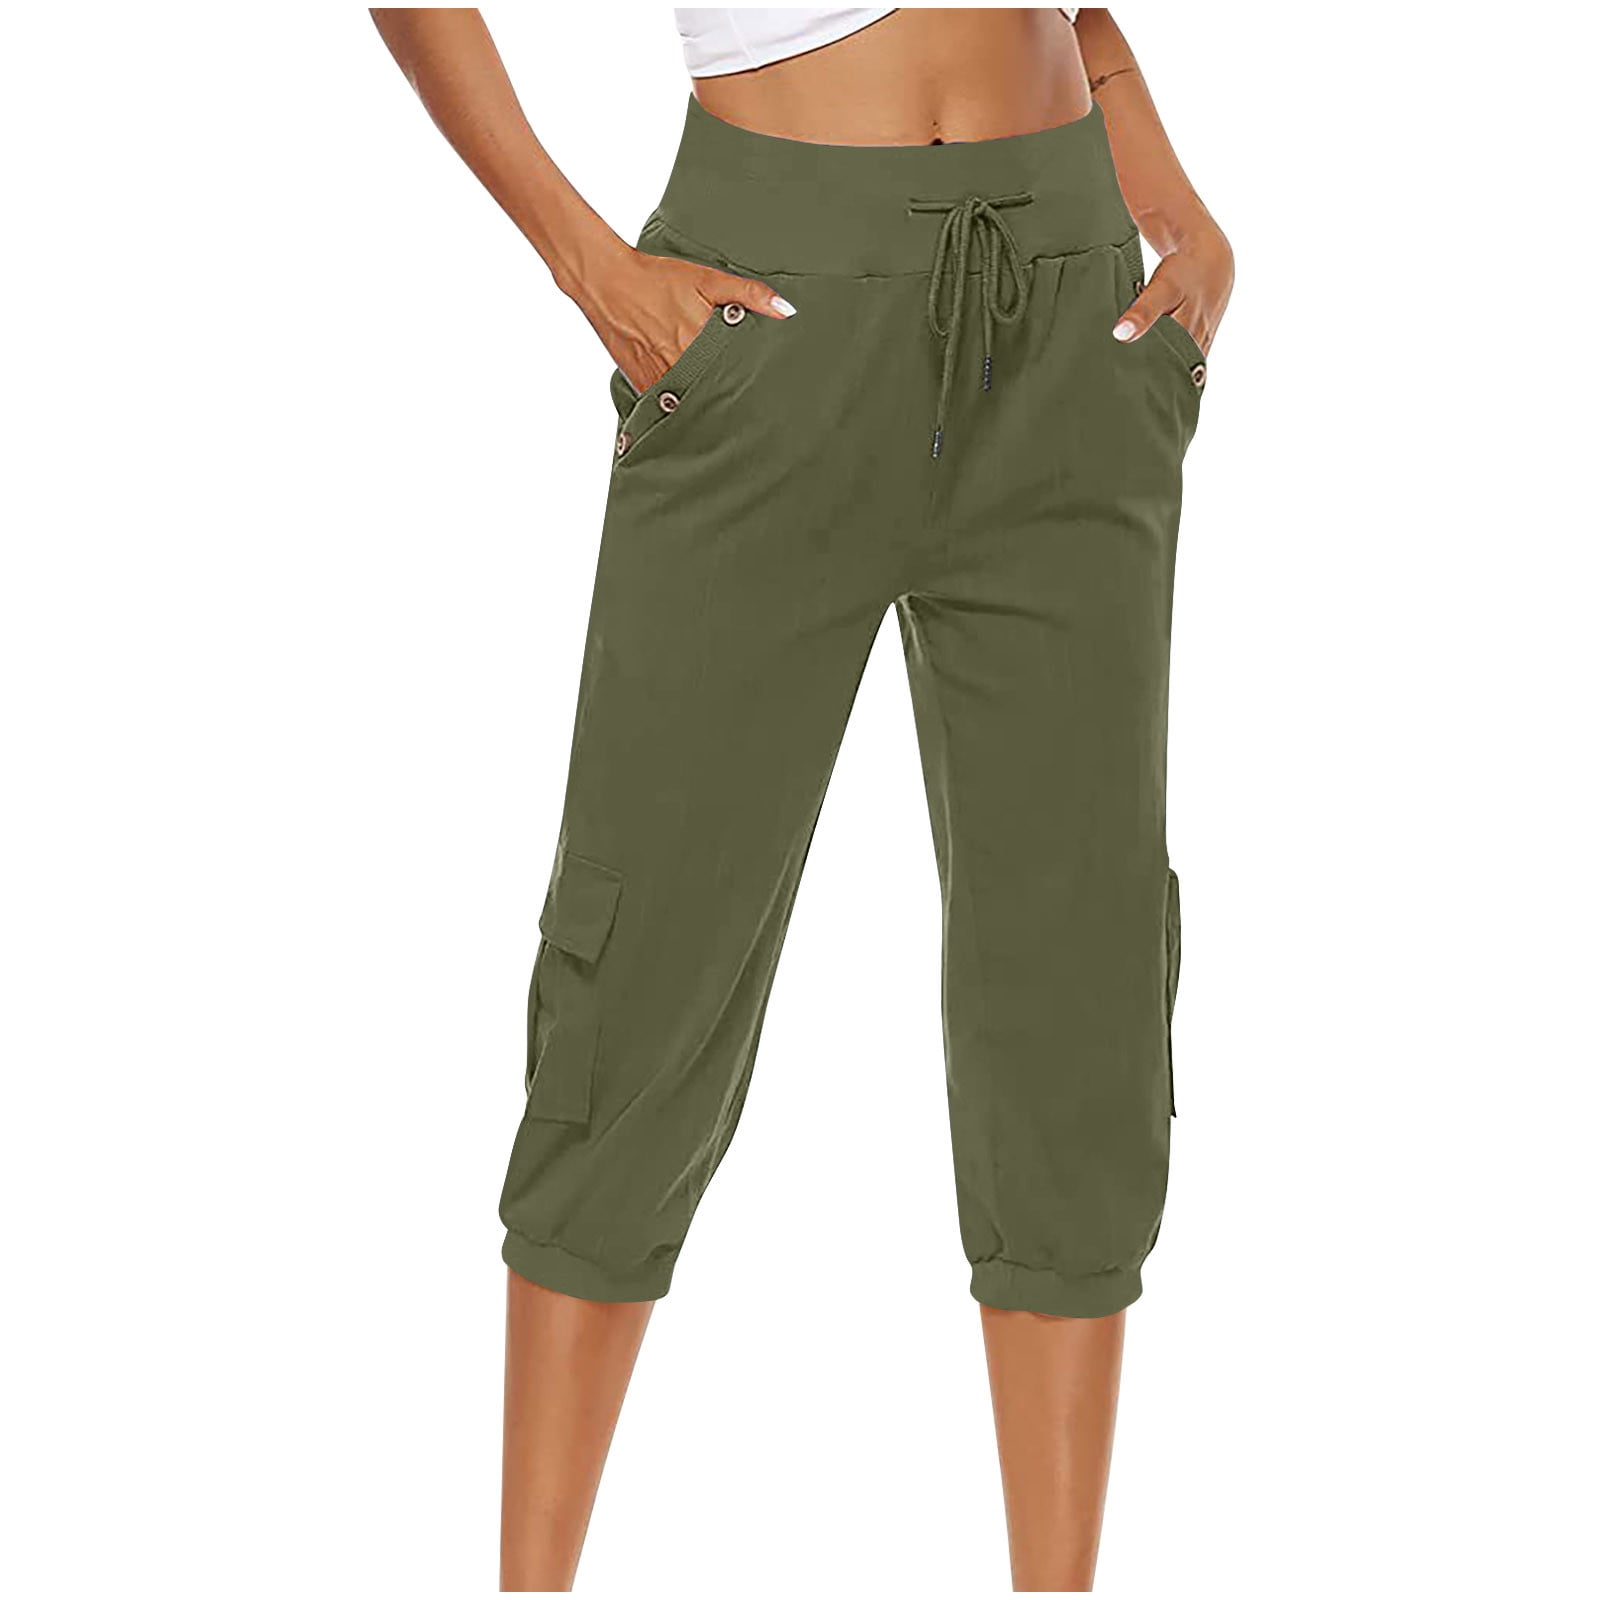 Plus Size Capri Pants for Women High Waist Workout Athletic Capris  Trackpants Dandelion Print Joggers 3/4 Slacks (Small, Navy)